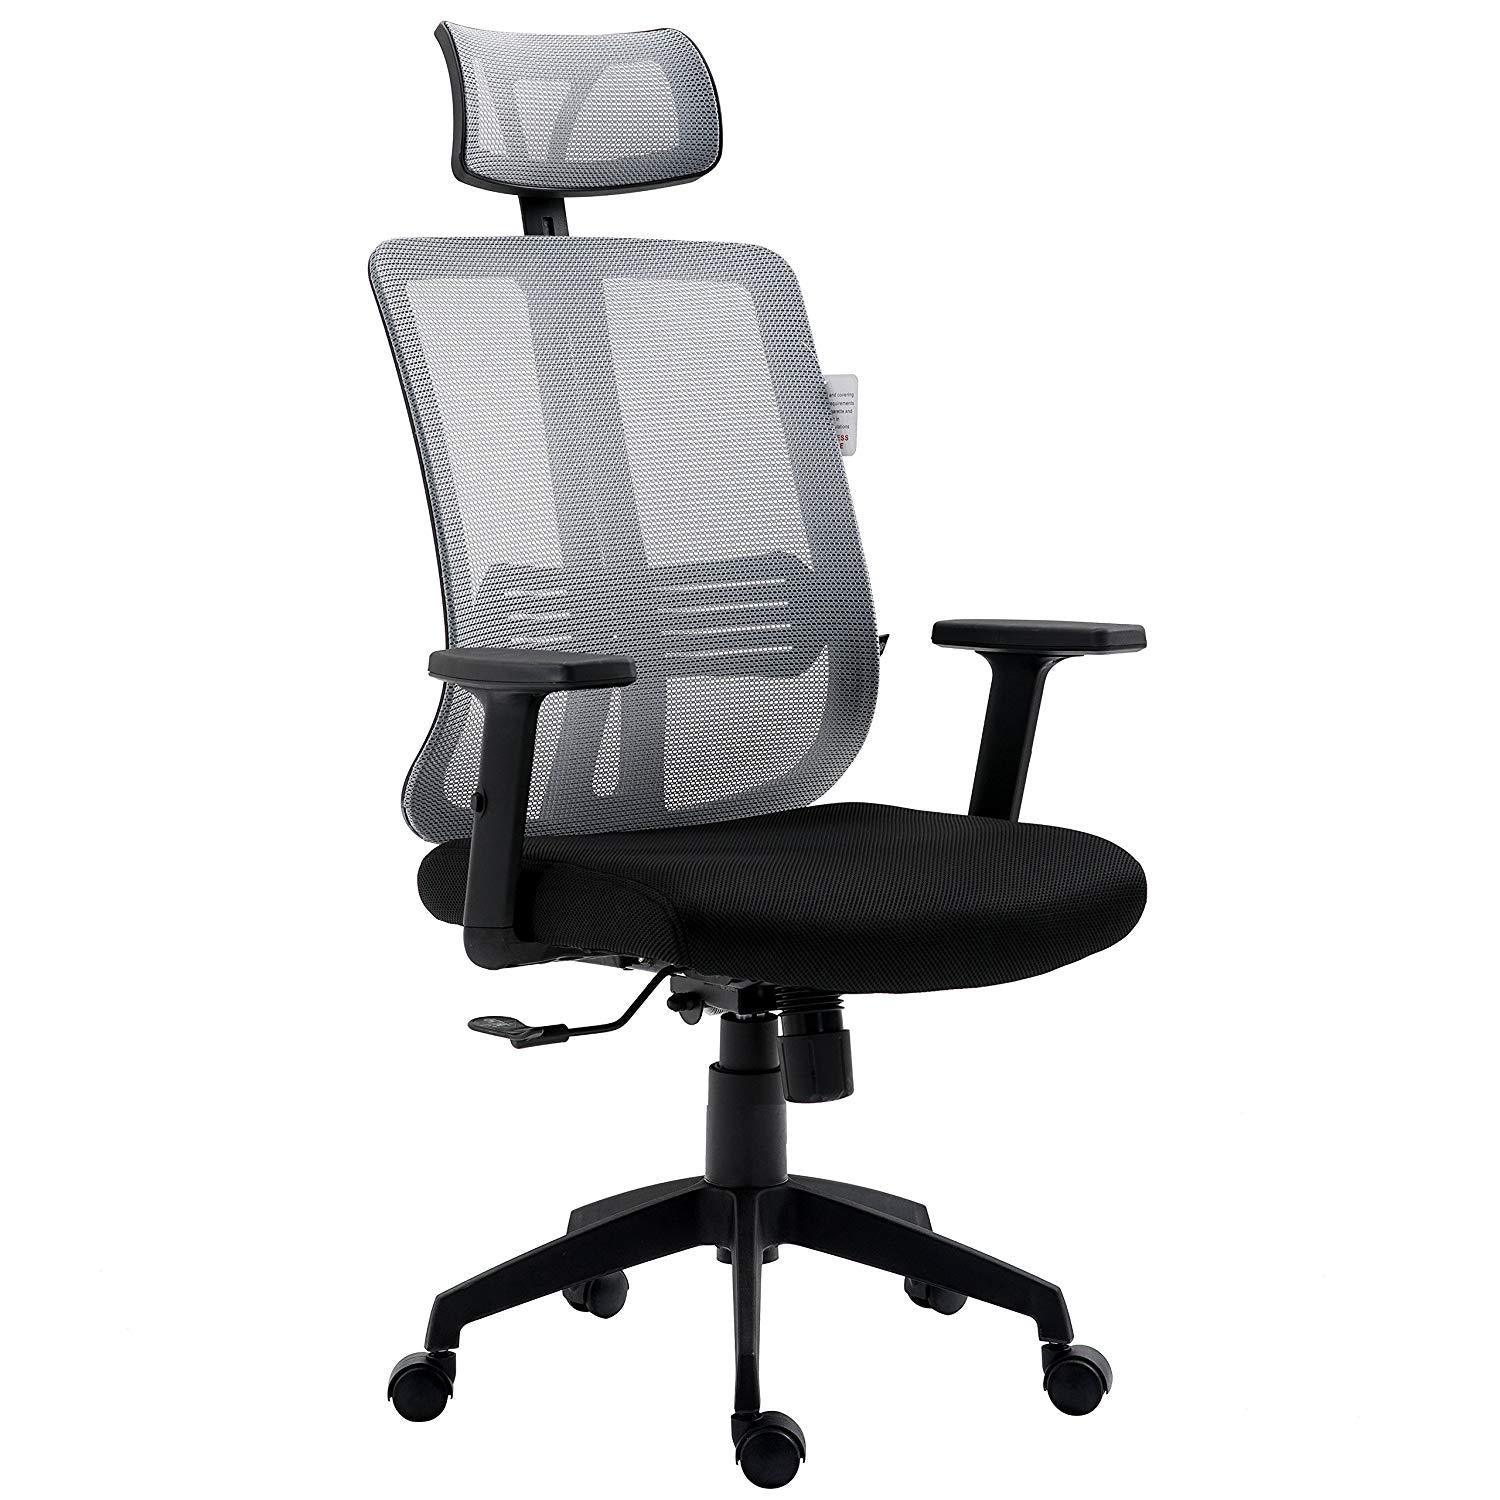 Grey Mesh High Back Executive Office Chair Swivel Desk Chair with Synchro-Tilt, Adjustable Armrest & Headrest